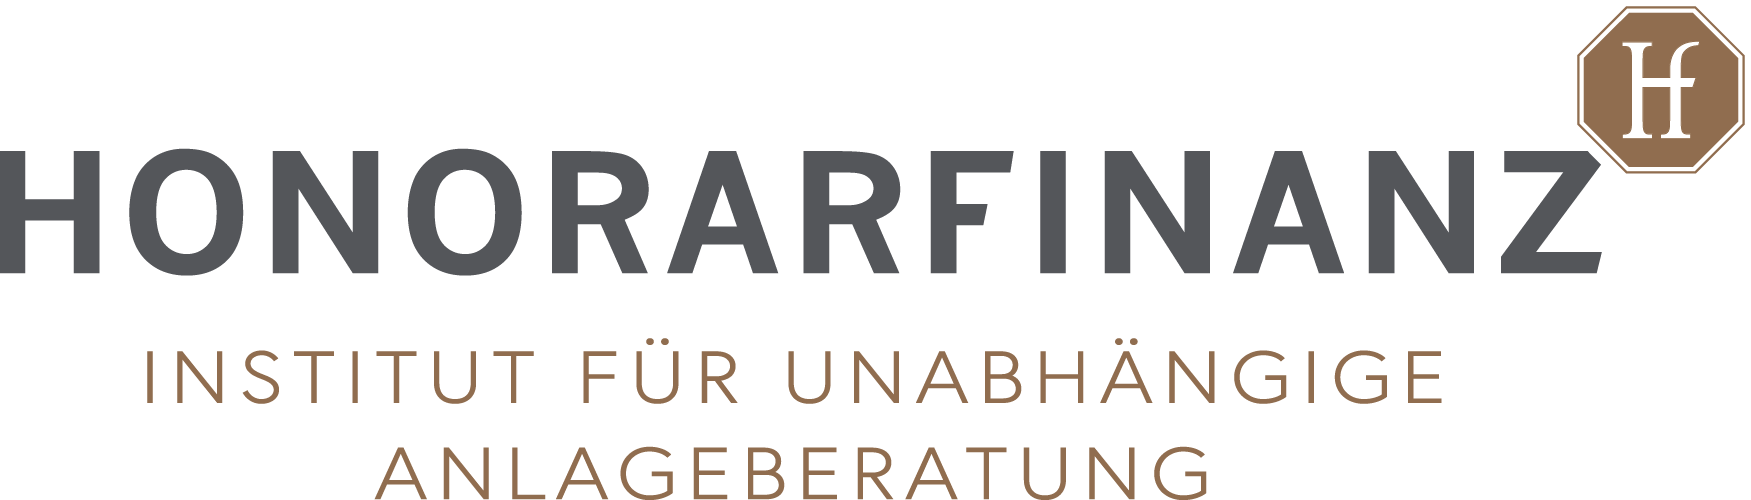 Volkmar Heinz Unabhängige Anlage- und Finanzplanung Logo